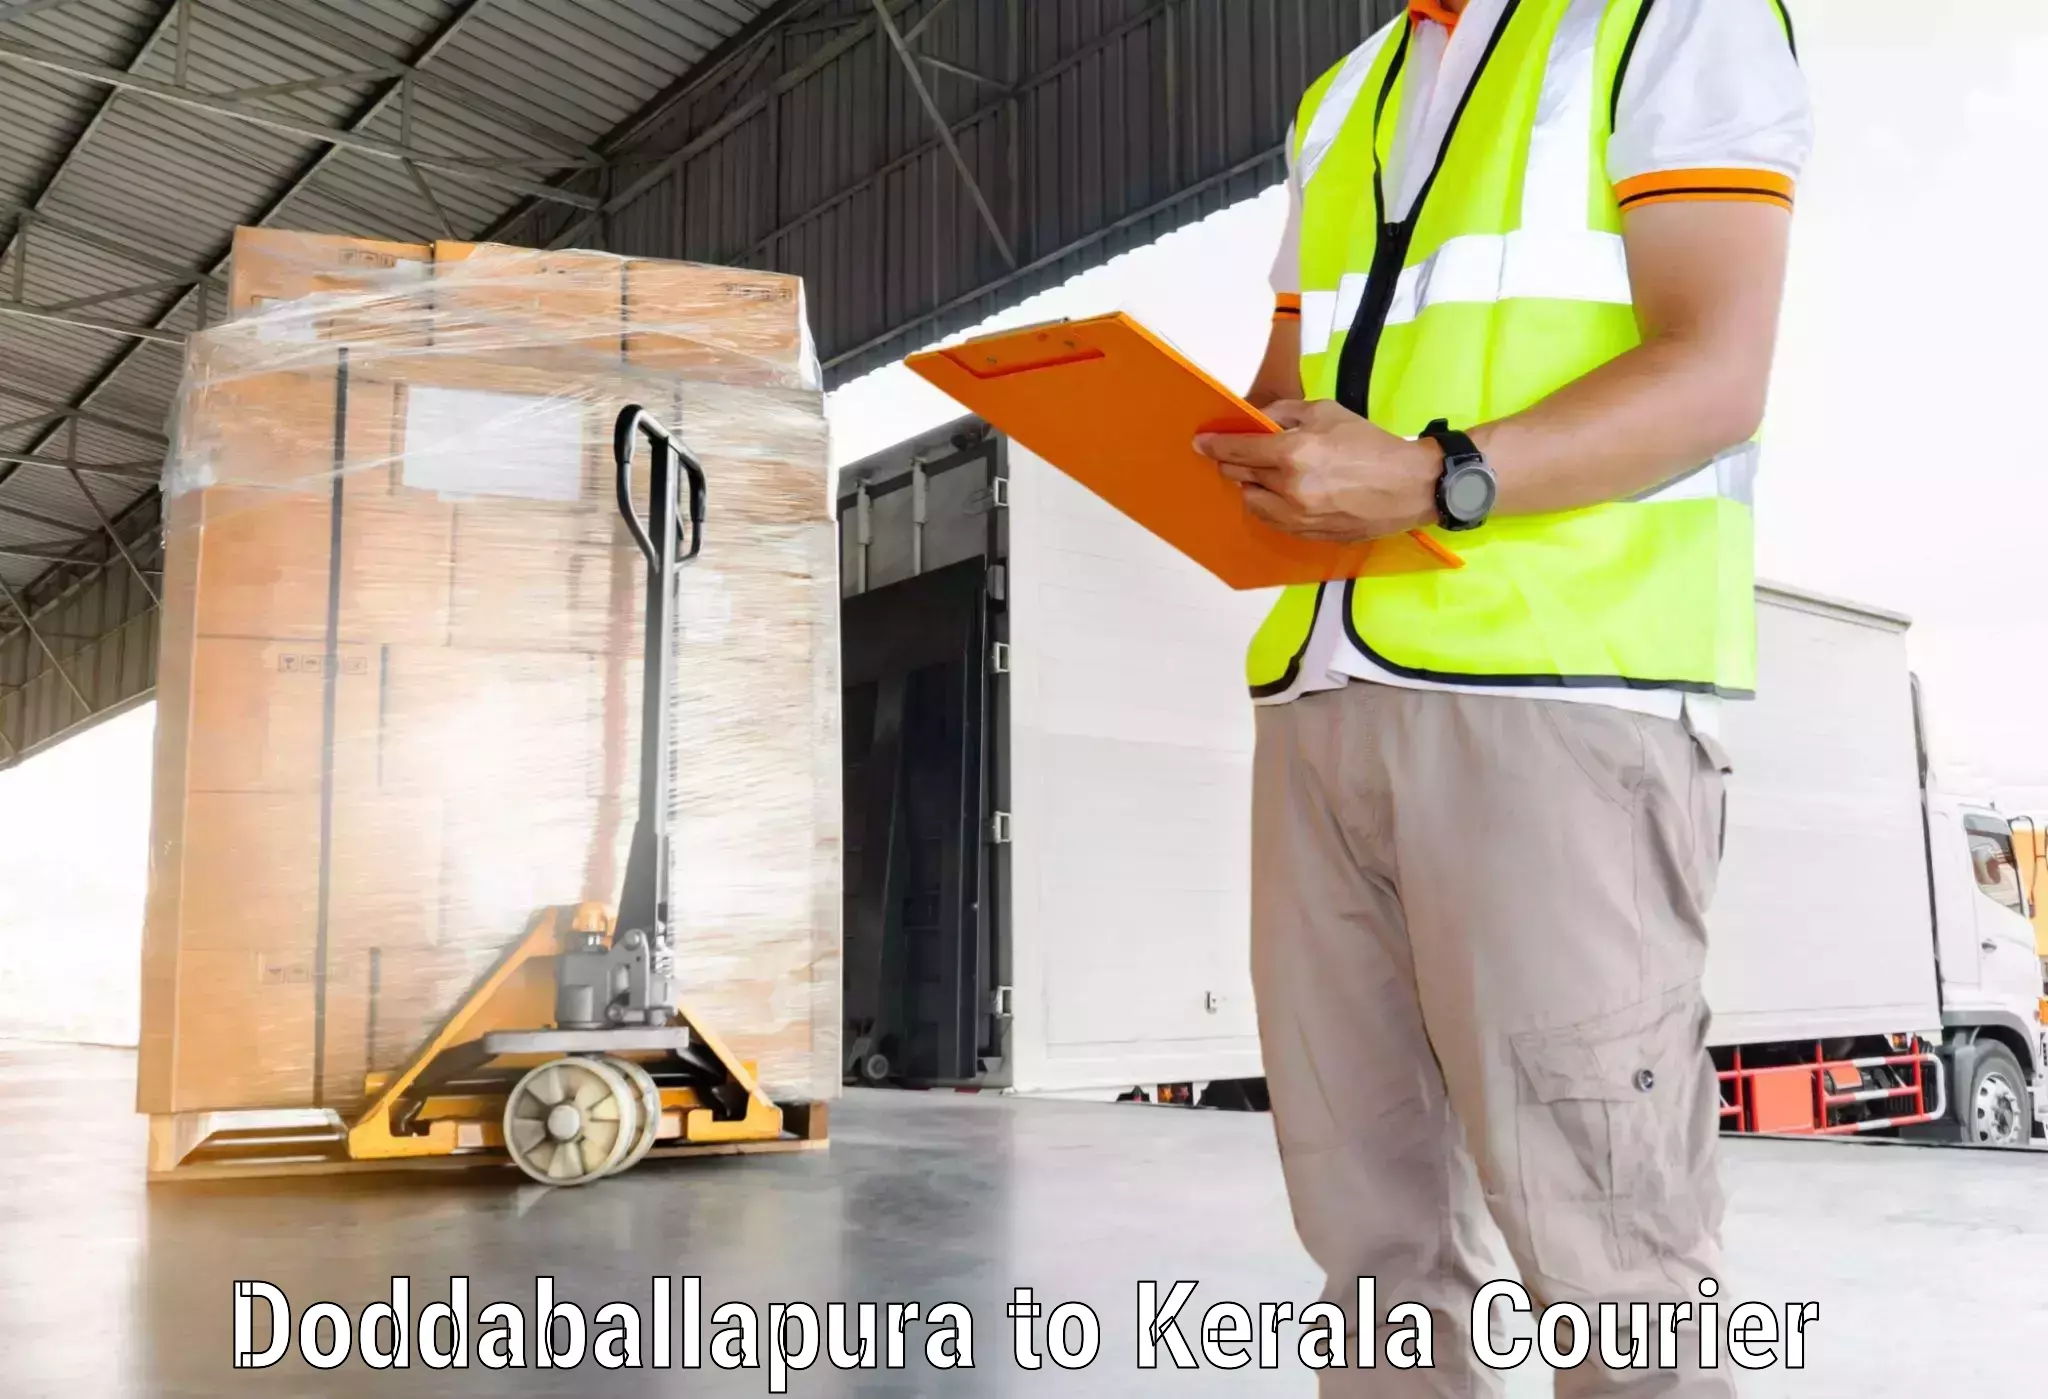 Global courier networks Doddaballapura to Akaloor